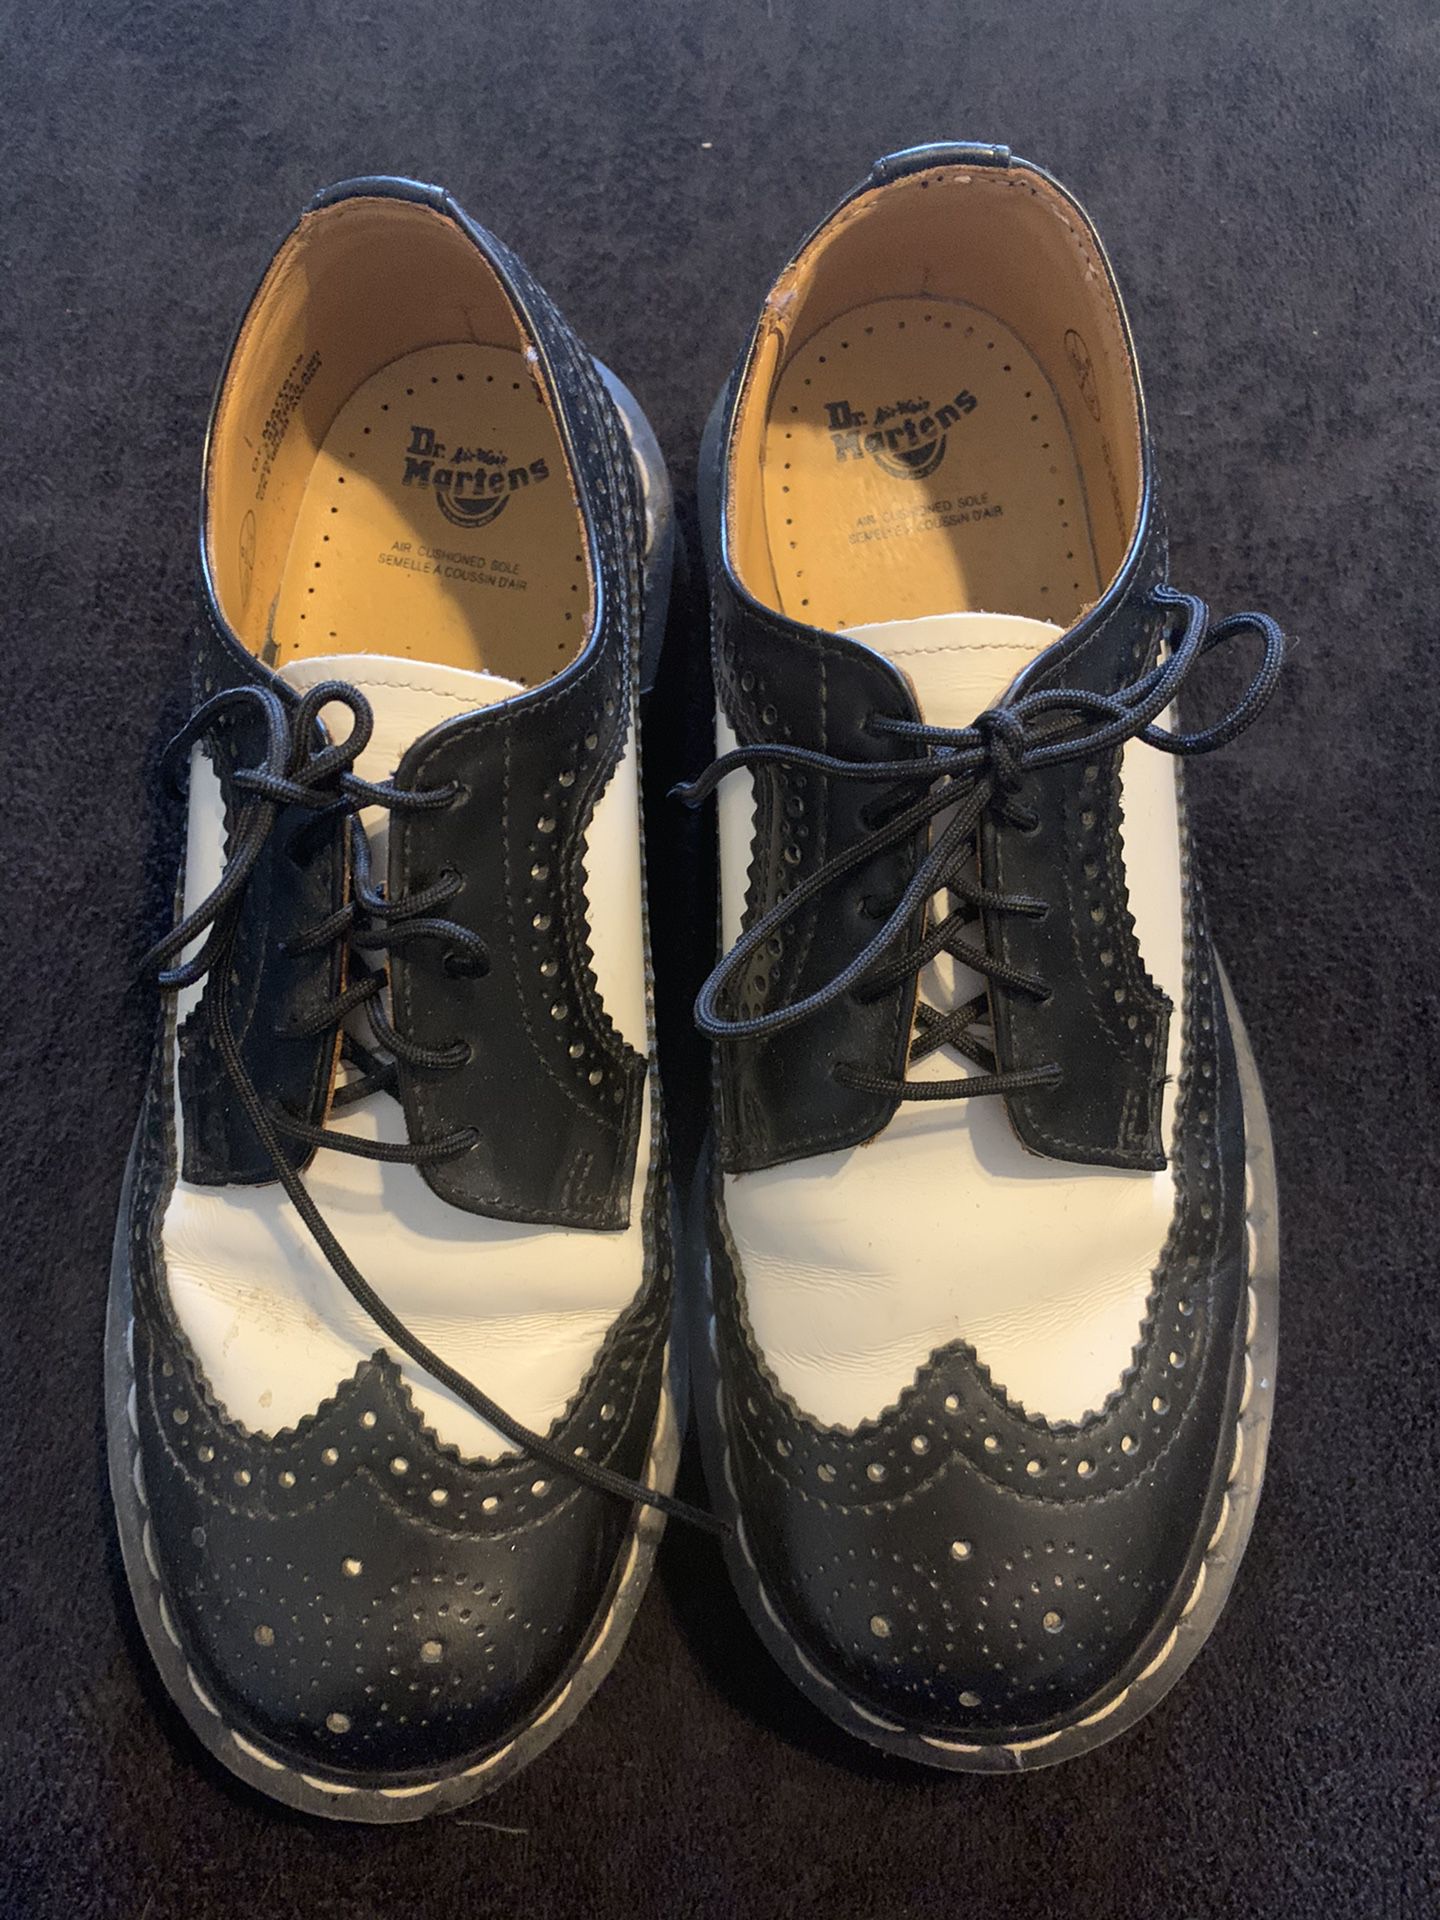 613 Dr. Martens, 3989 Brogue BEX 3-Eye Leather Wingtip Shoe for Men